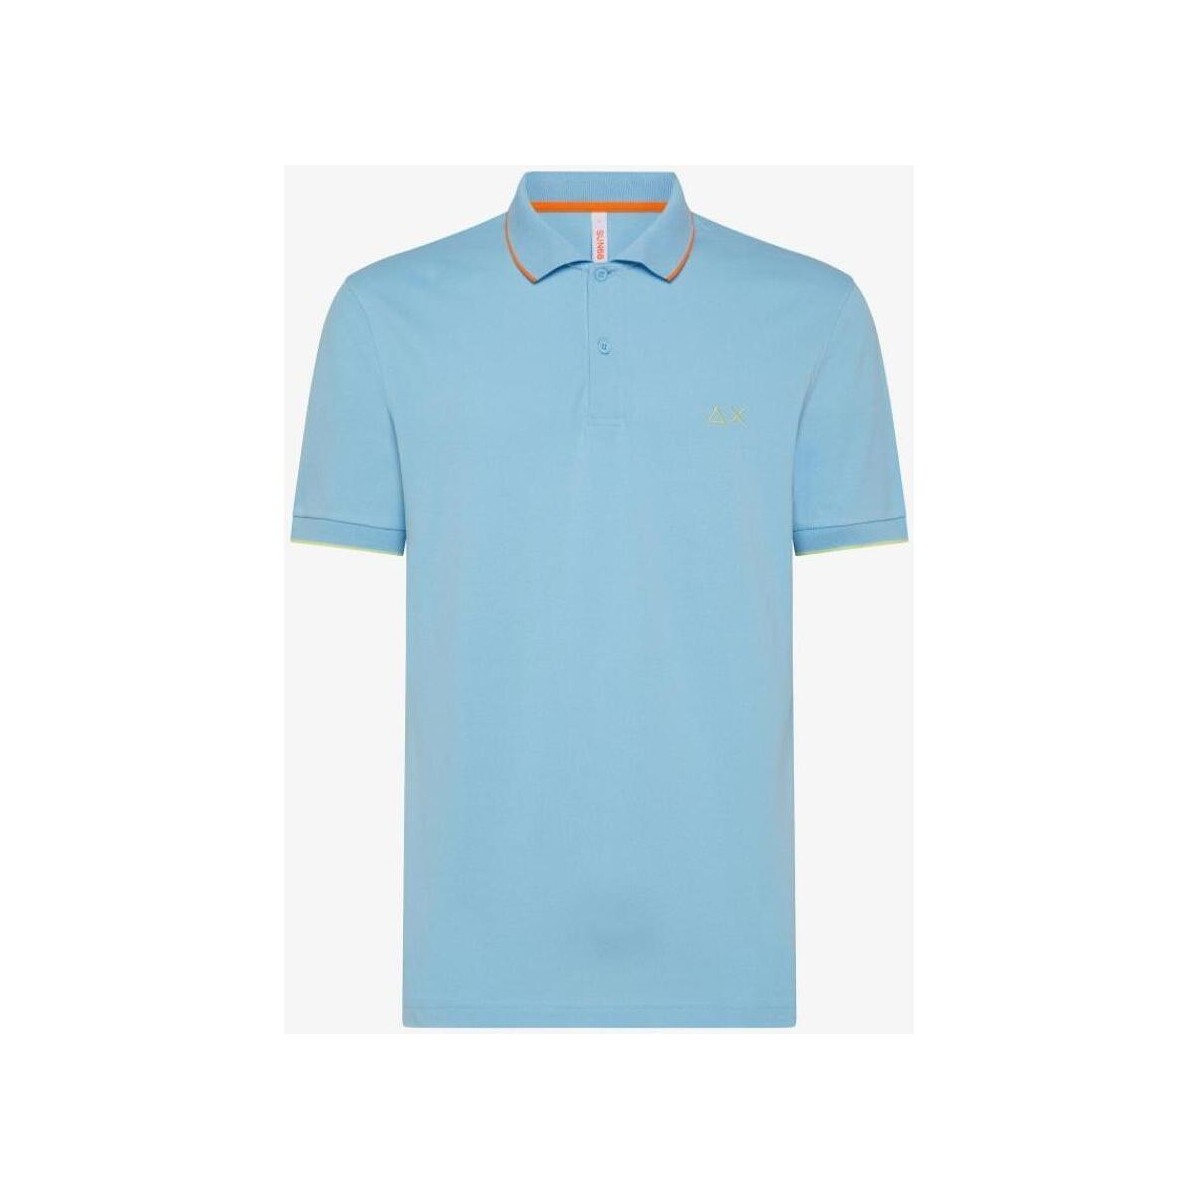 Abbigliamento Uomo T-shirt maniche corte Sun68  Blu